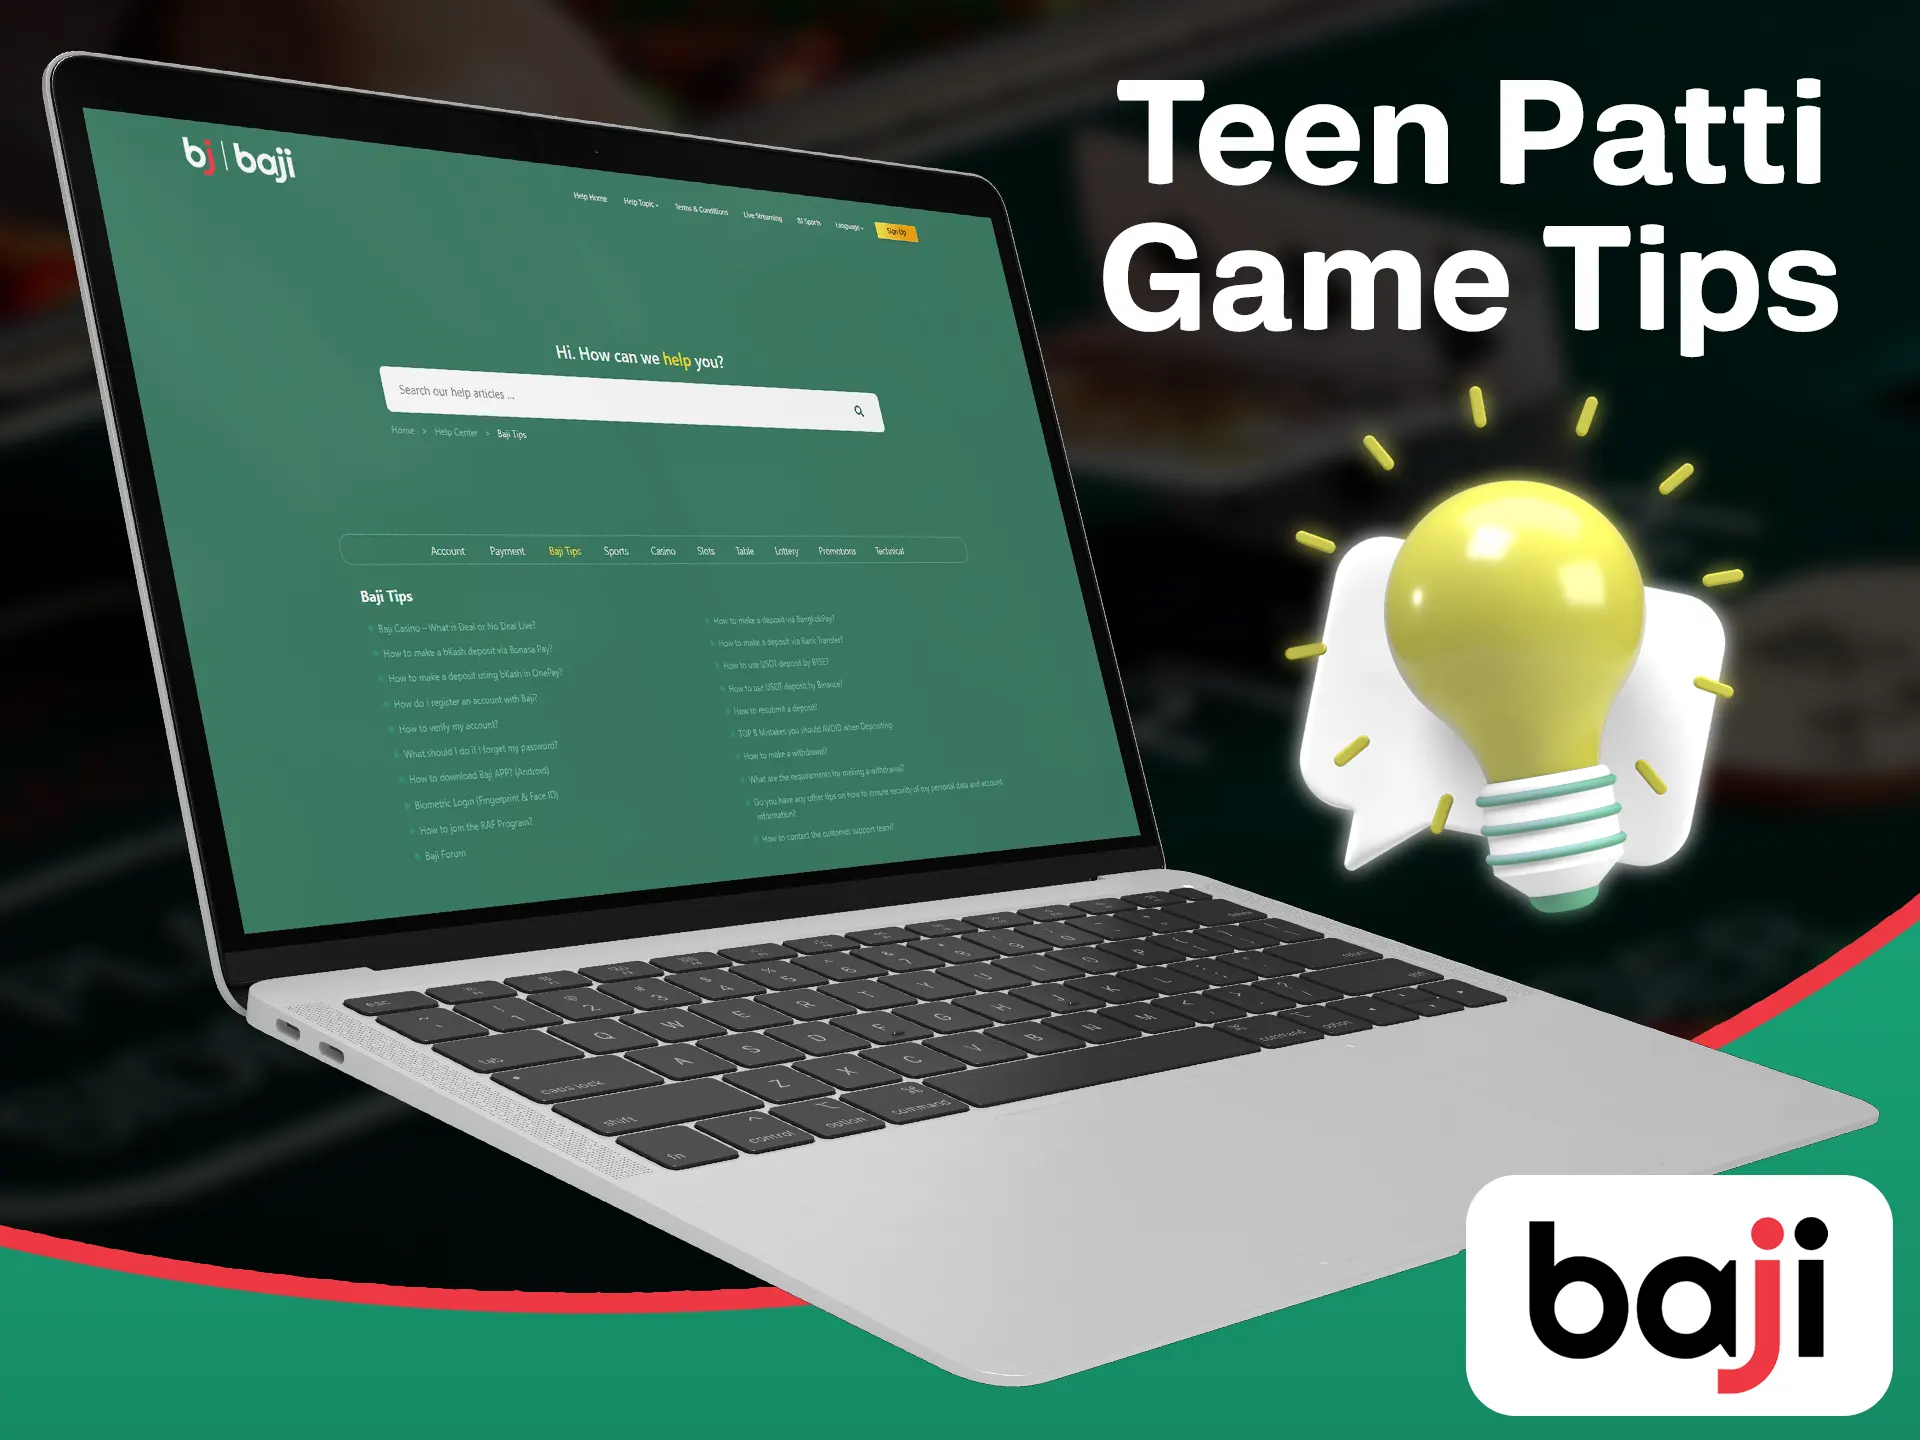 Use Baji teen patti tips when starting the teen patti game.